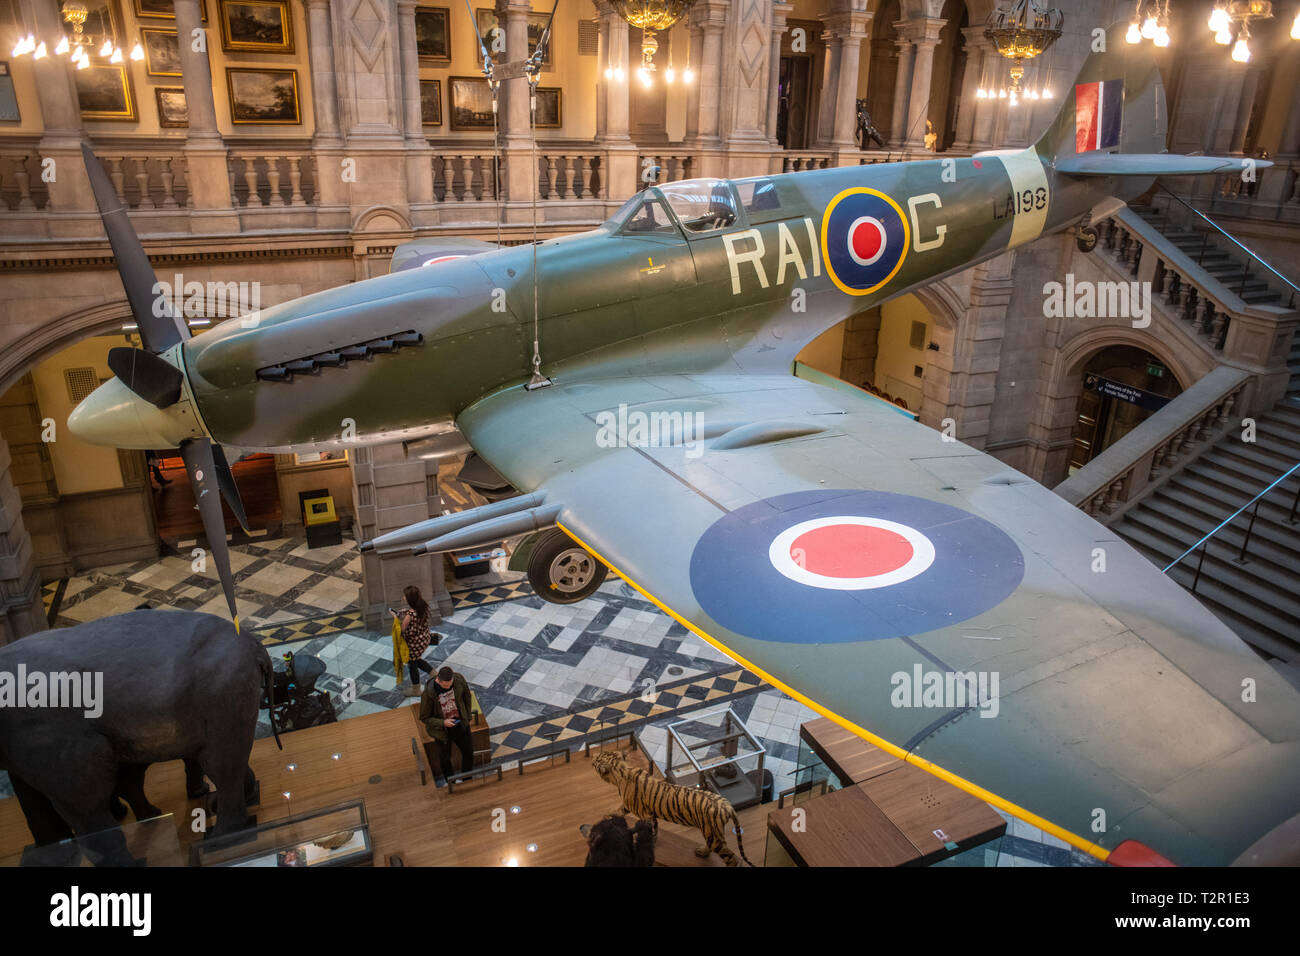 Un avion suspendu dans le hall de la musée de Kelvingrove à Glasgow, Ecosse Banque D'Images